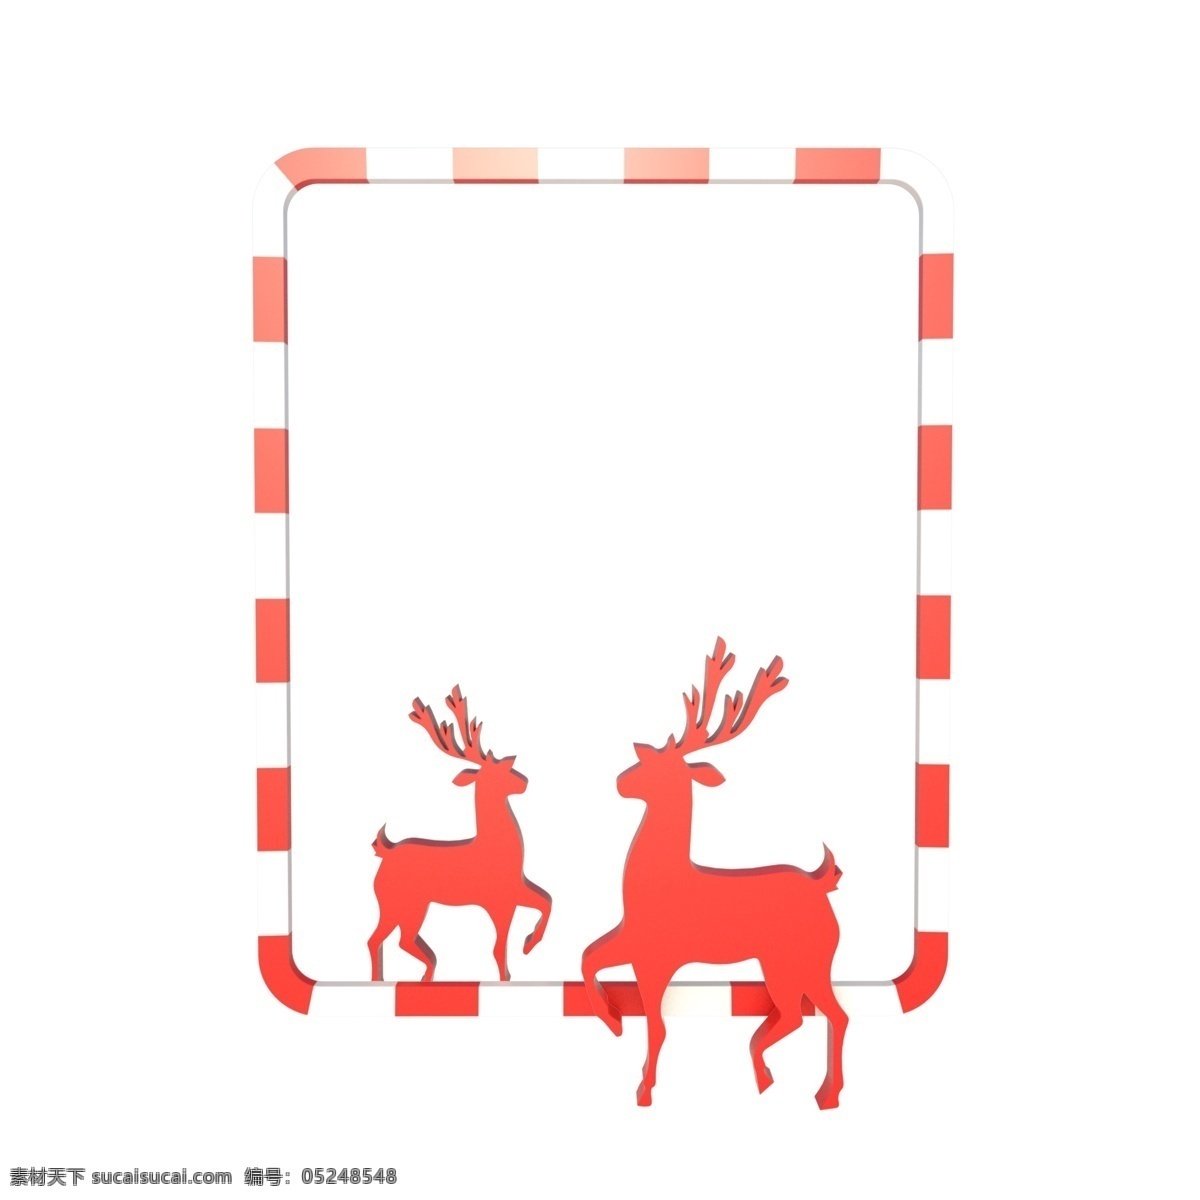 圣诞节 c4d 立体 麋鹿 装饰 边框 红白边框 圣诞快乐 海报边框 merry christmas